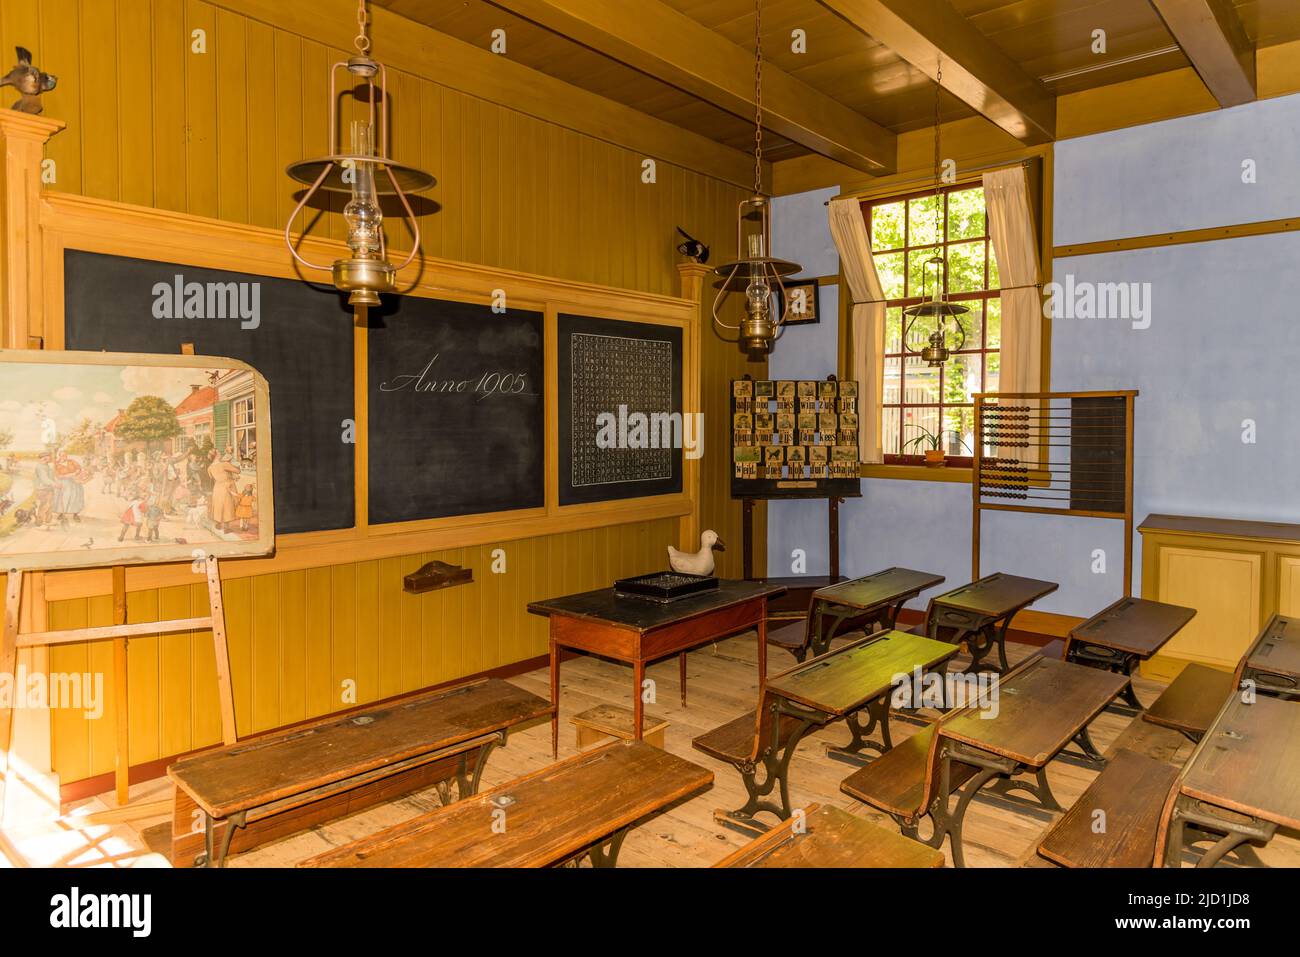 Enkhuizen, Paesi Bassi. Un'aula in vecchio stile del secolo scorso. Foto di alta qualità Foto Stock